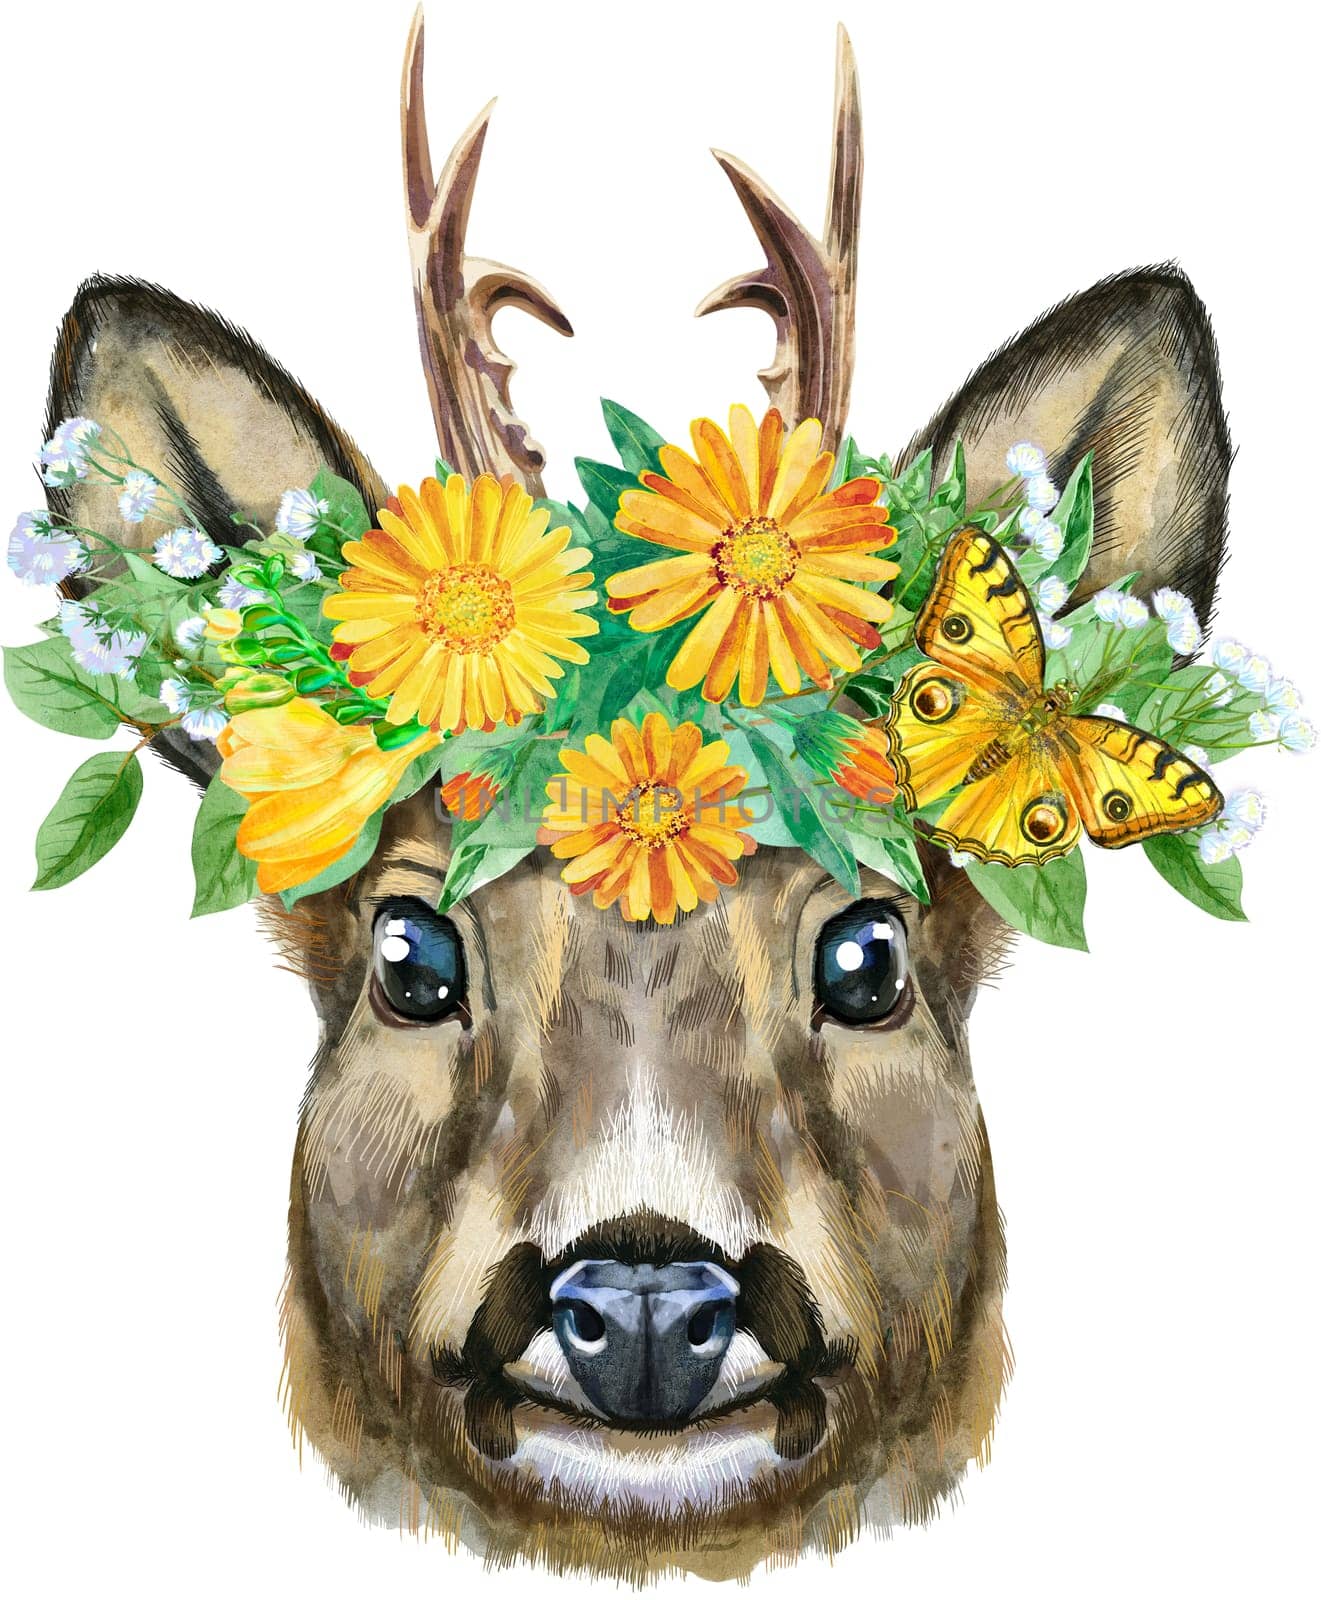 Watercolor drawing of the animal - roe deer in a wreath of flowers, sketch